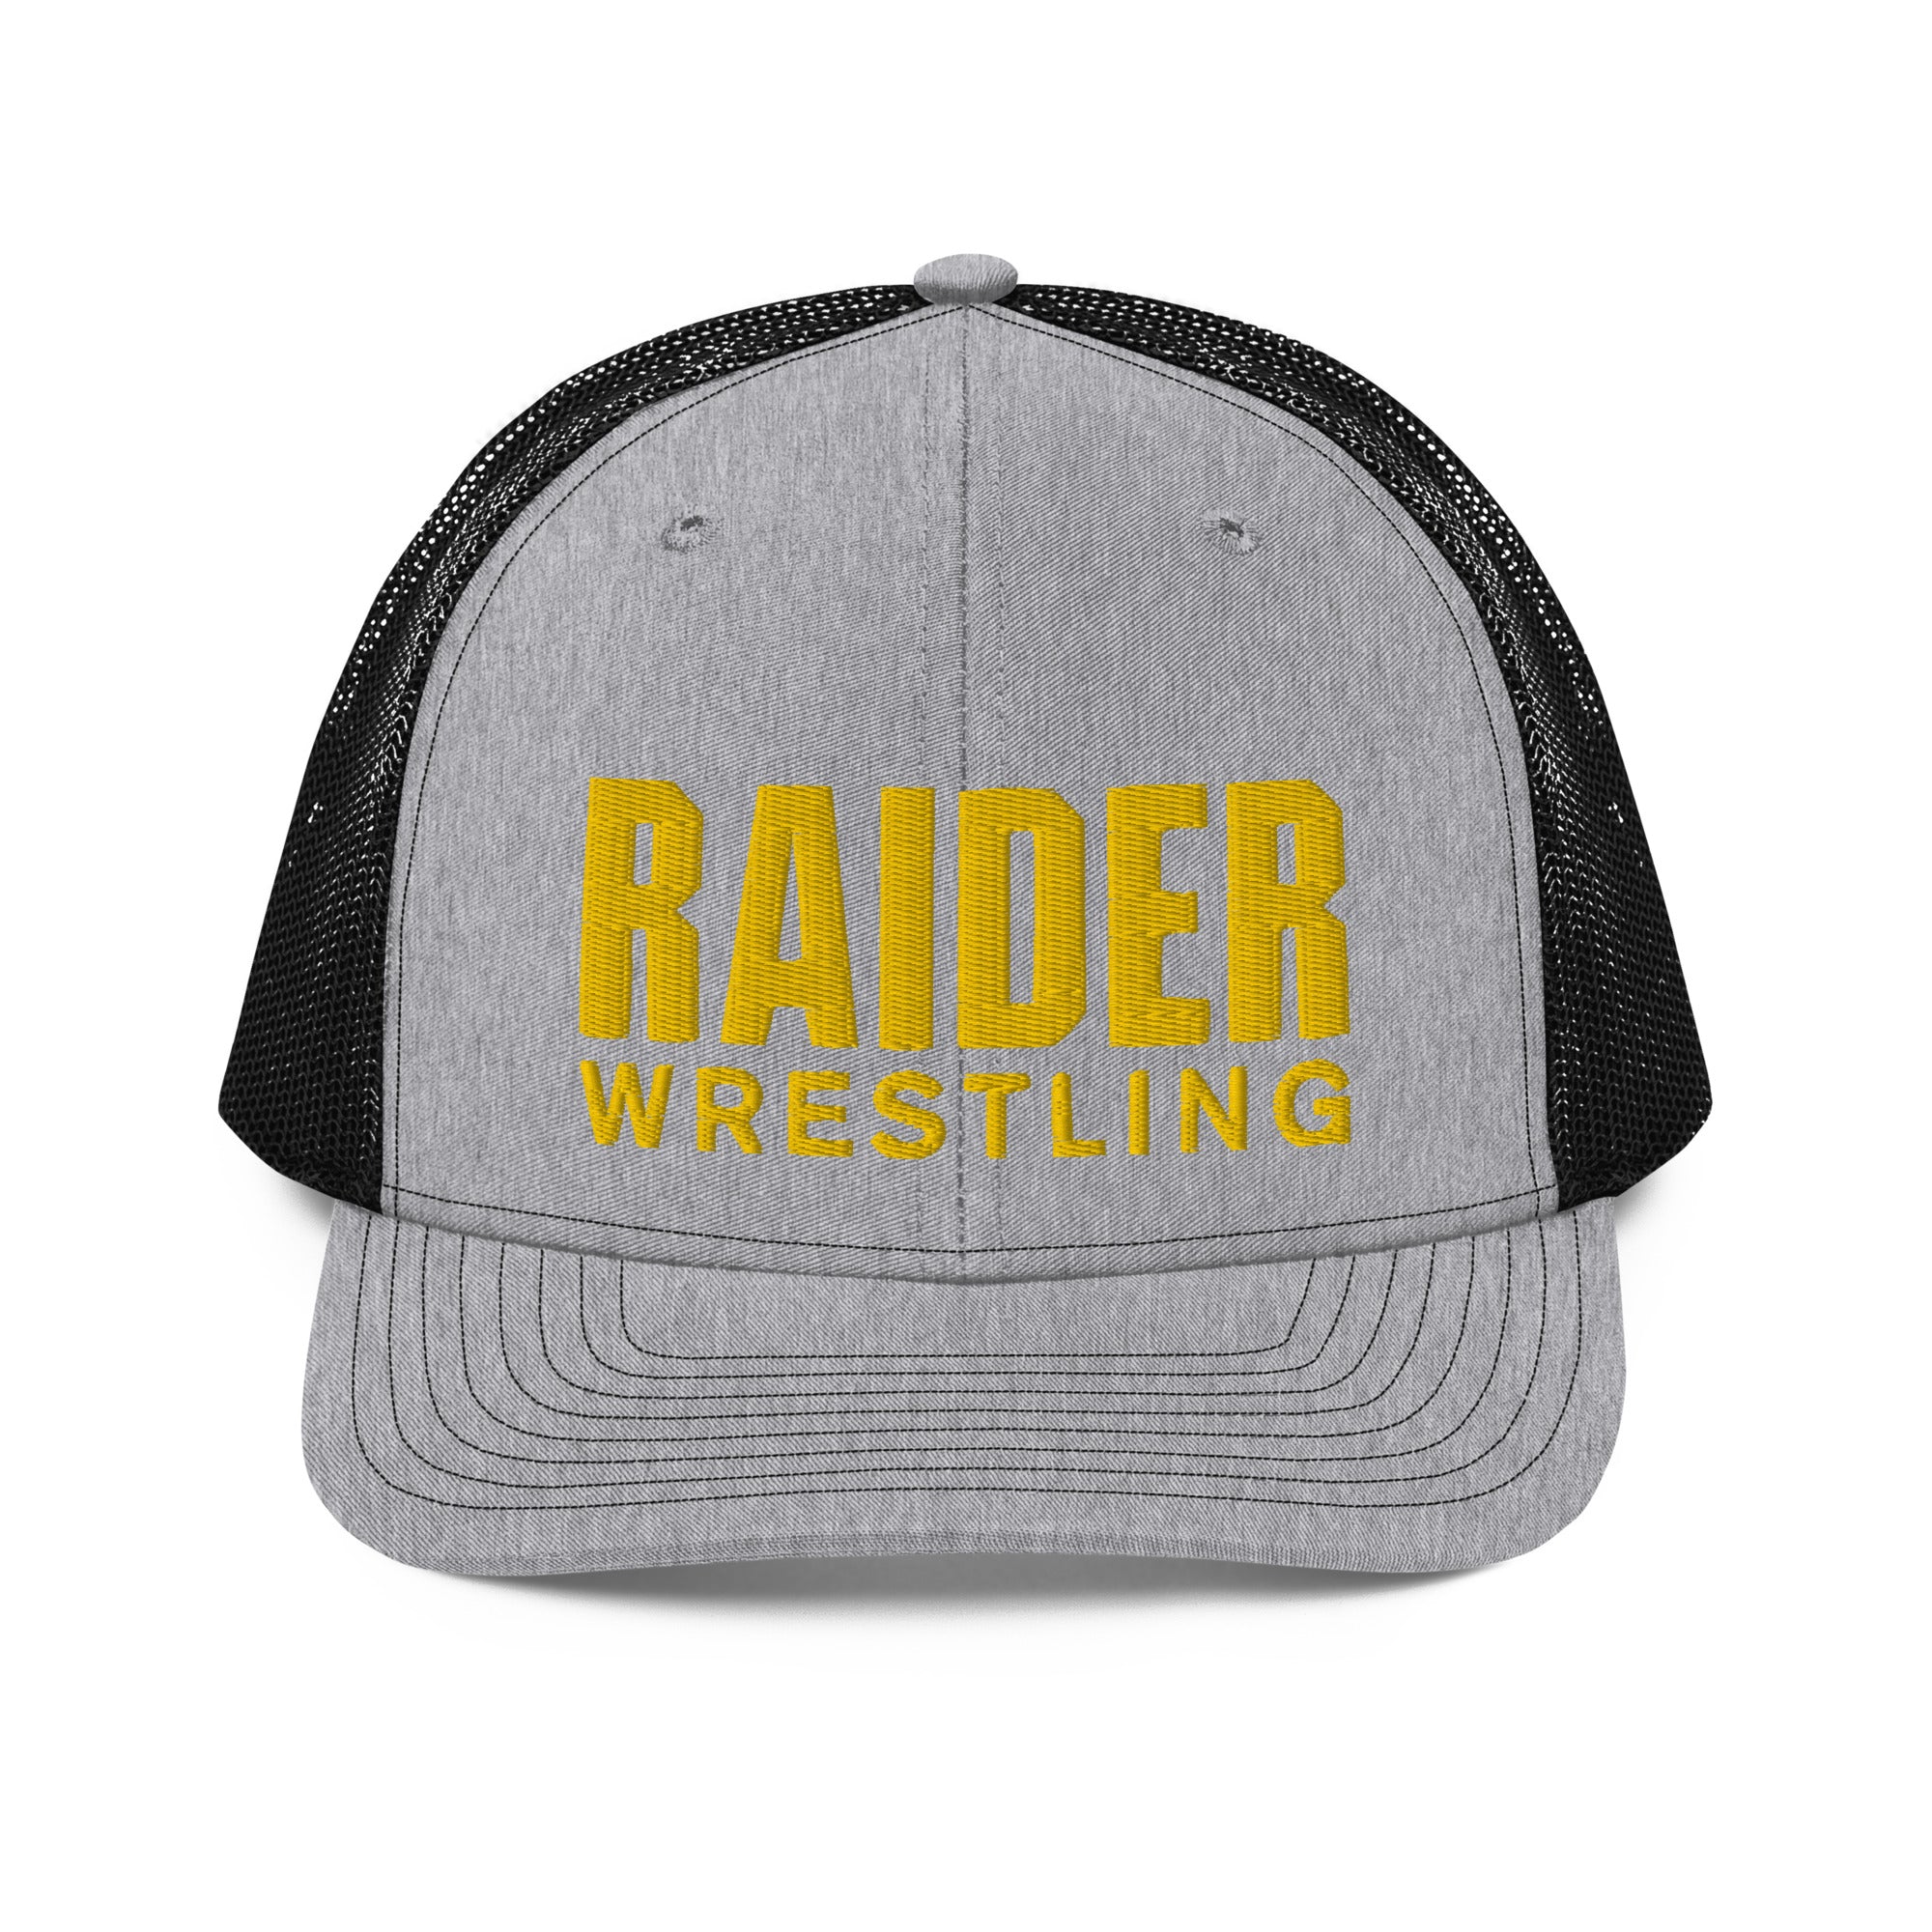 SMS Raider Wrestling Trucker Cap